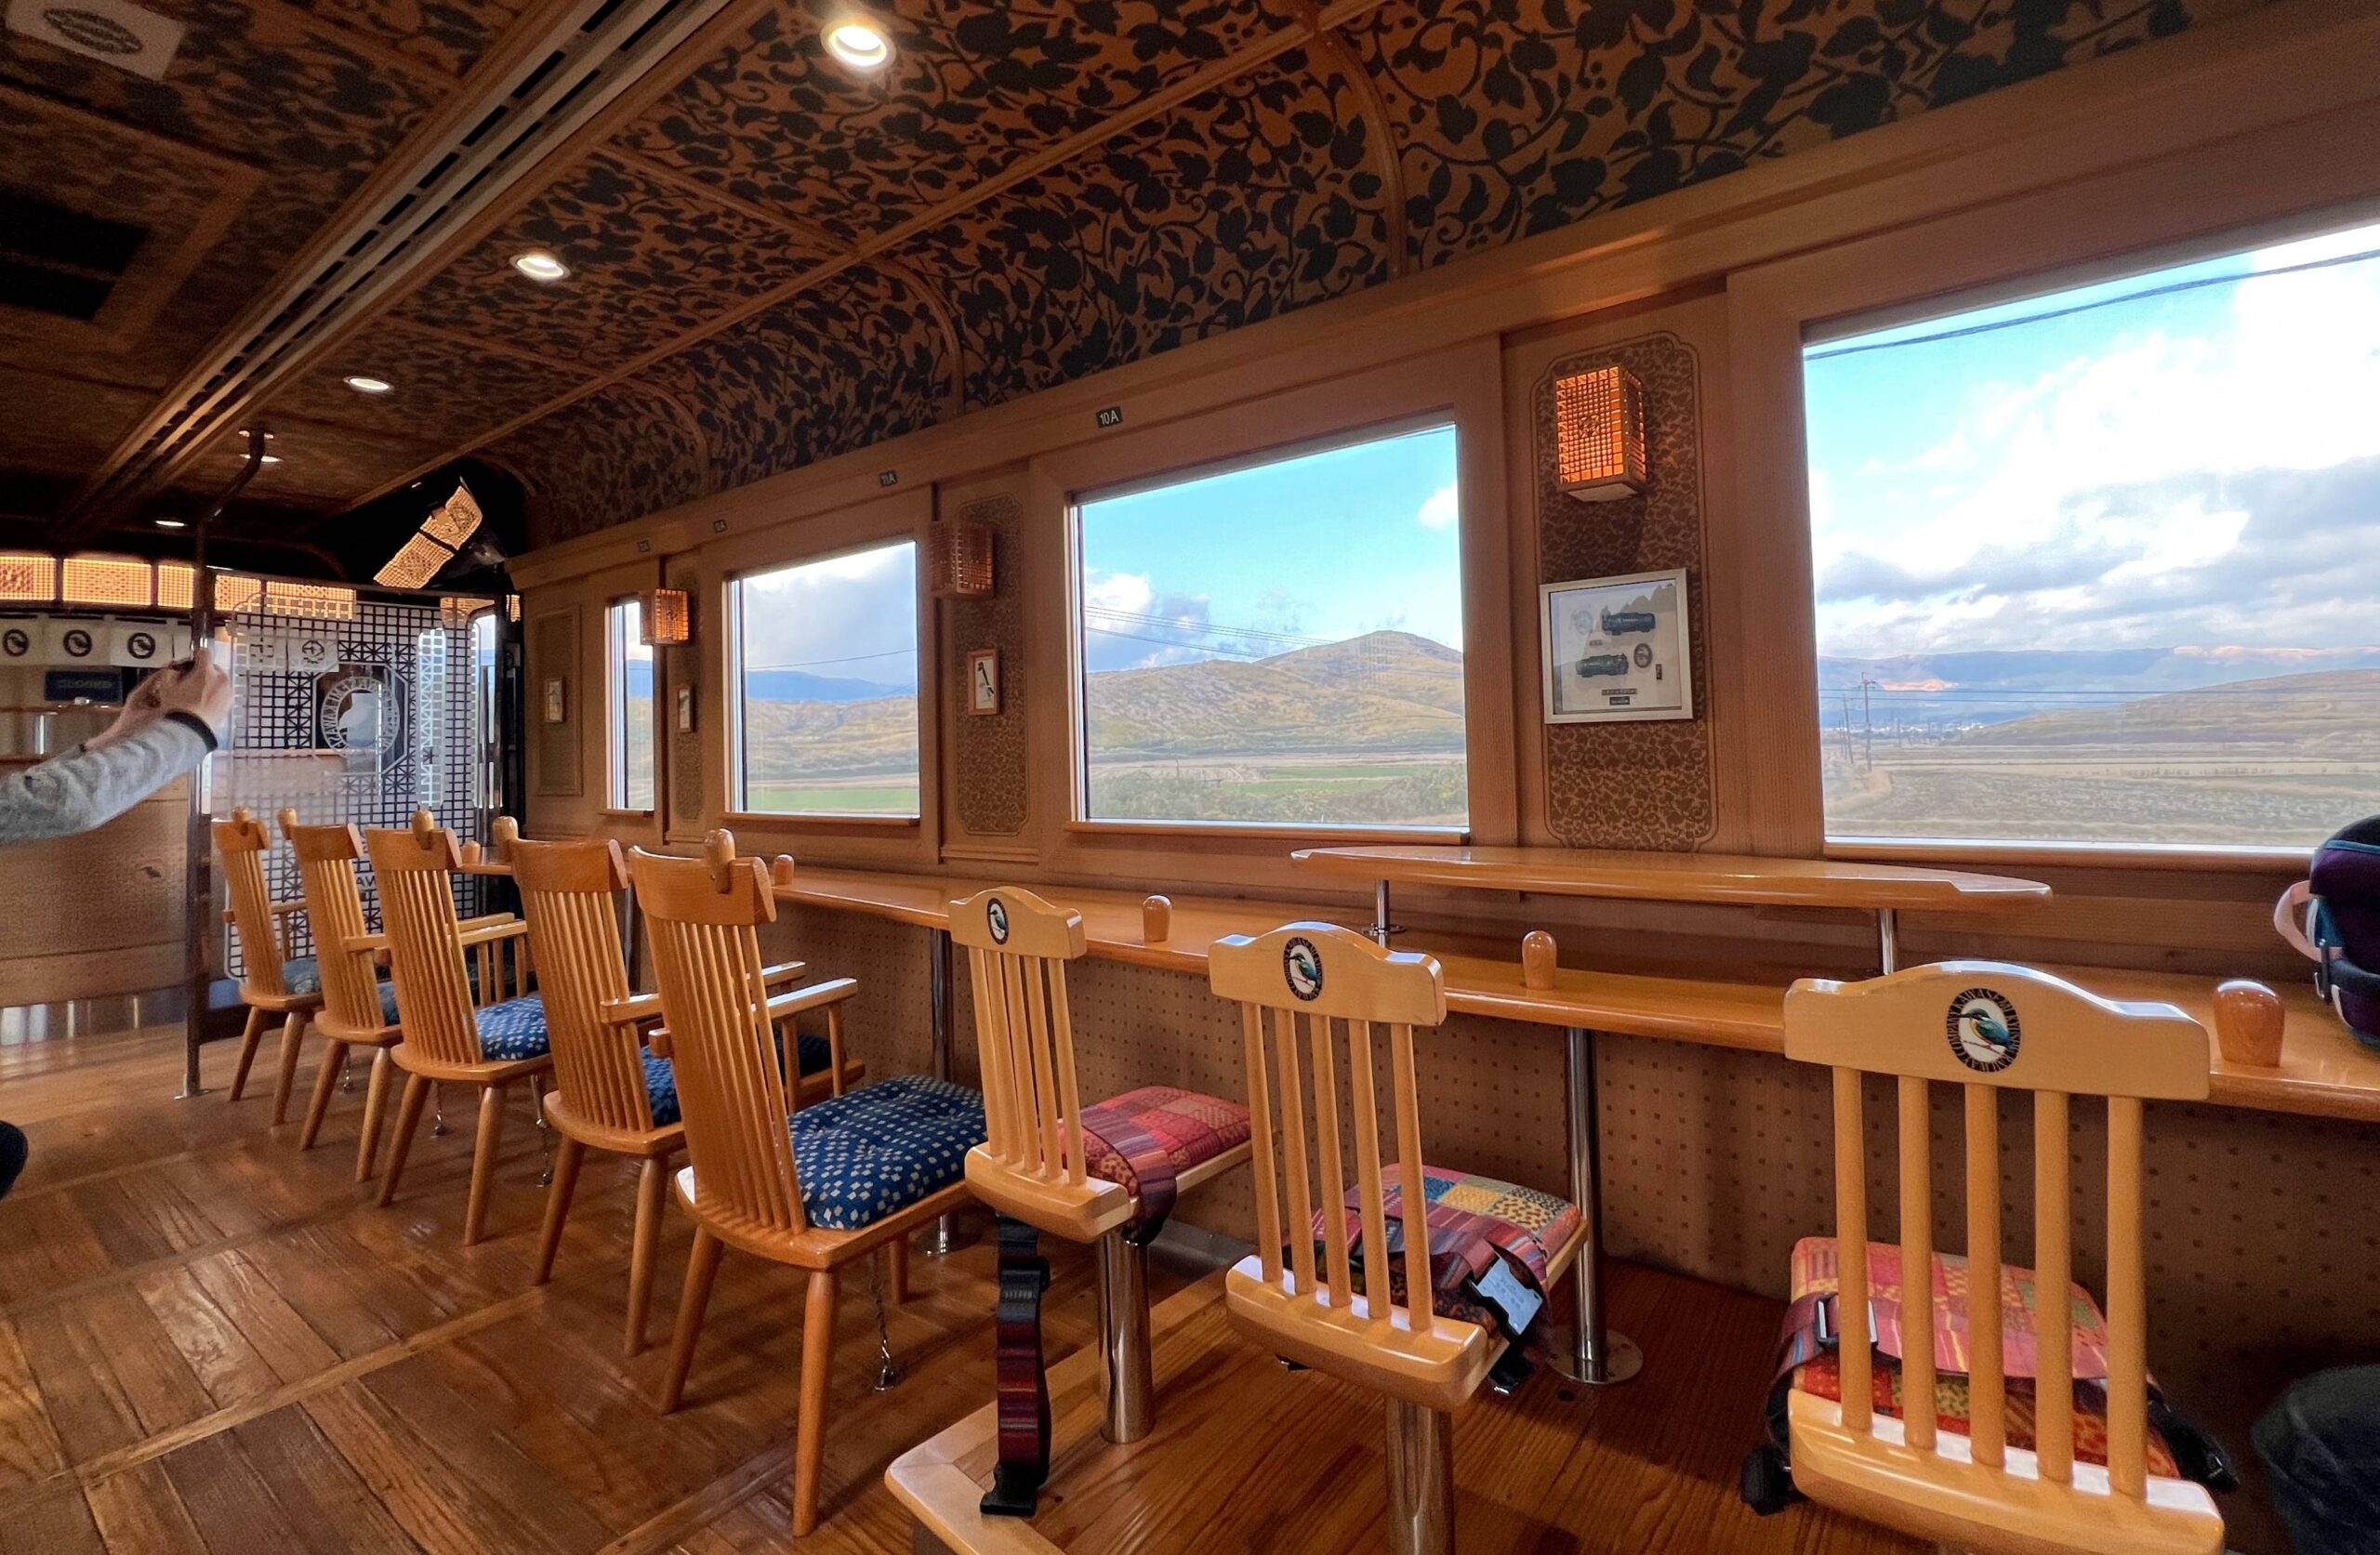 東台灣海岸線找一間值得停留的景觀咖啡空間，眺望美麗湛藍的太平洋：山度空間、項鍊海岸工作室、海浪cafe、星龍花園咖啡 @。CJ夫人。